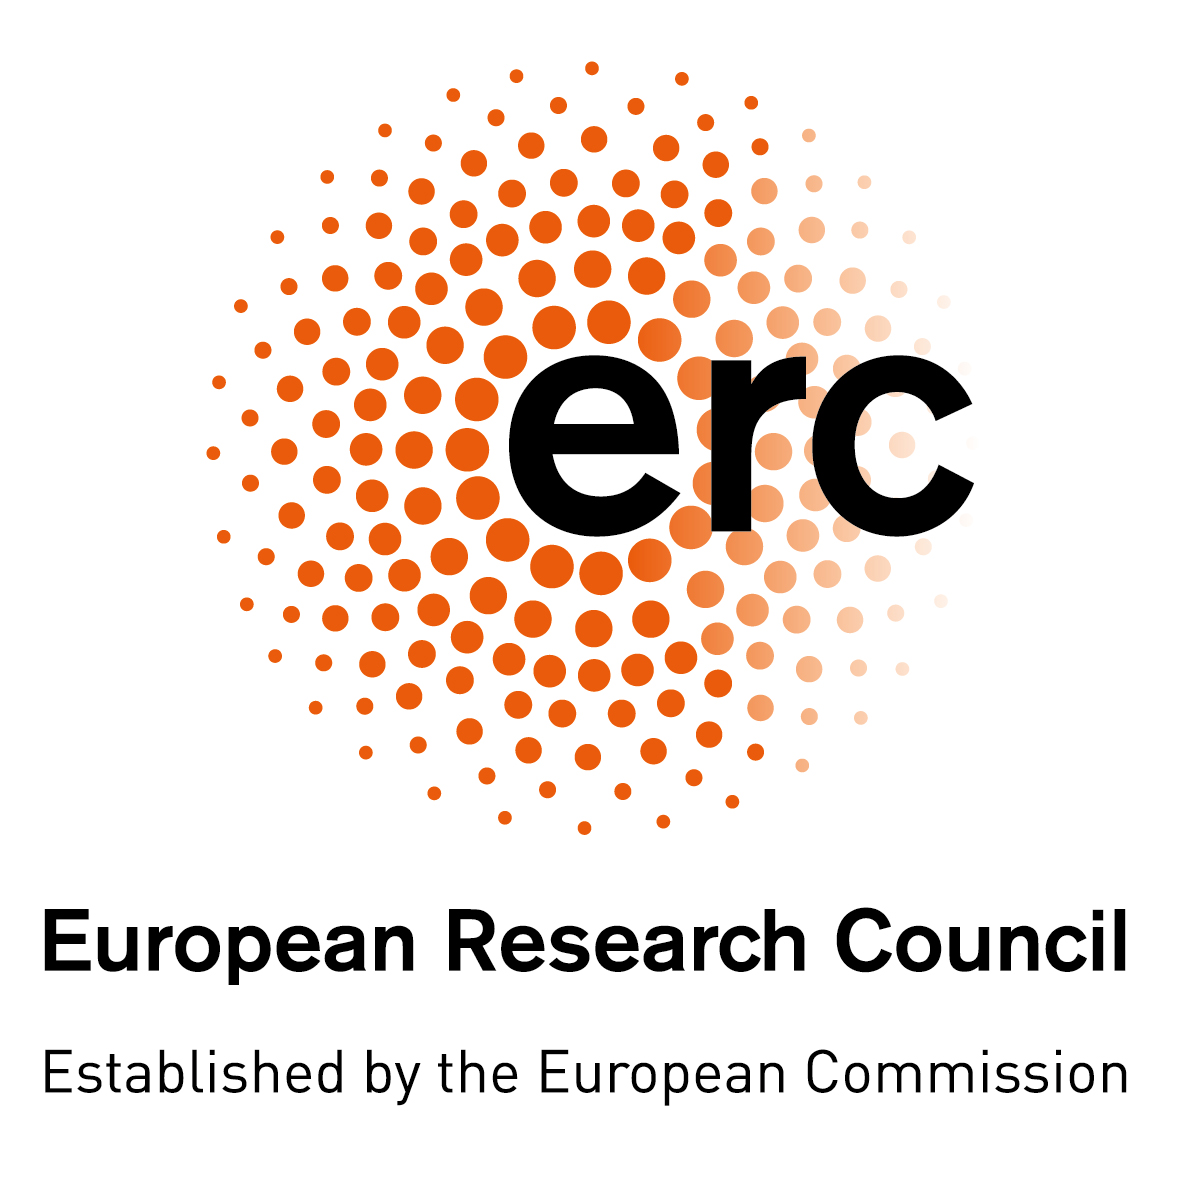 ERC - European Research Council (logo)